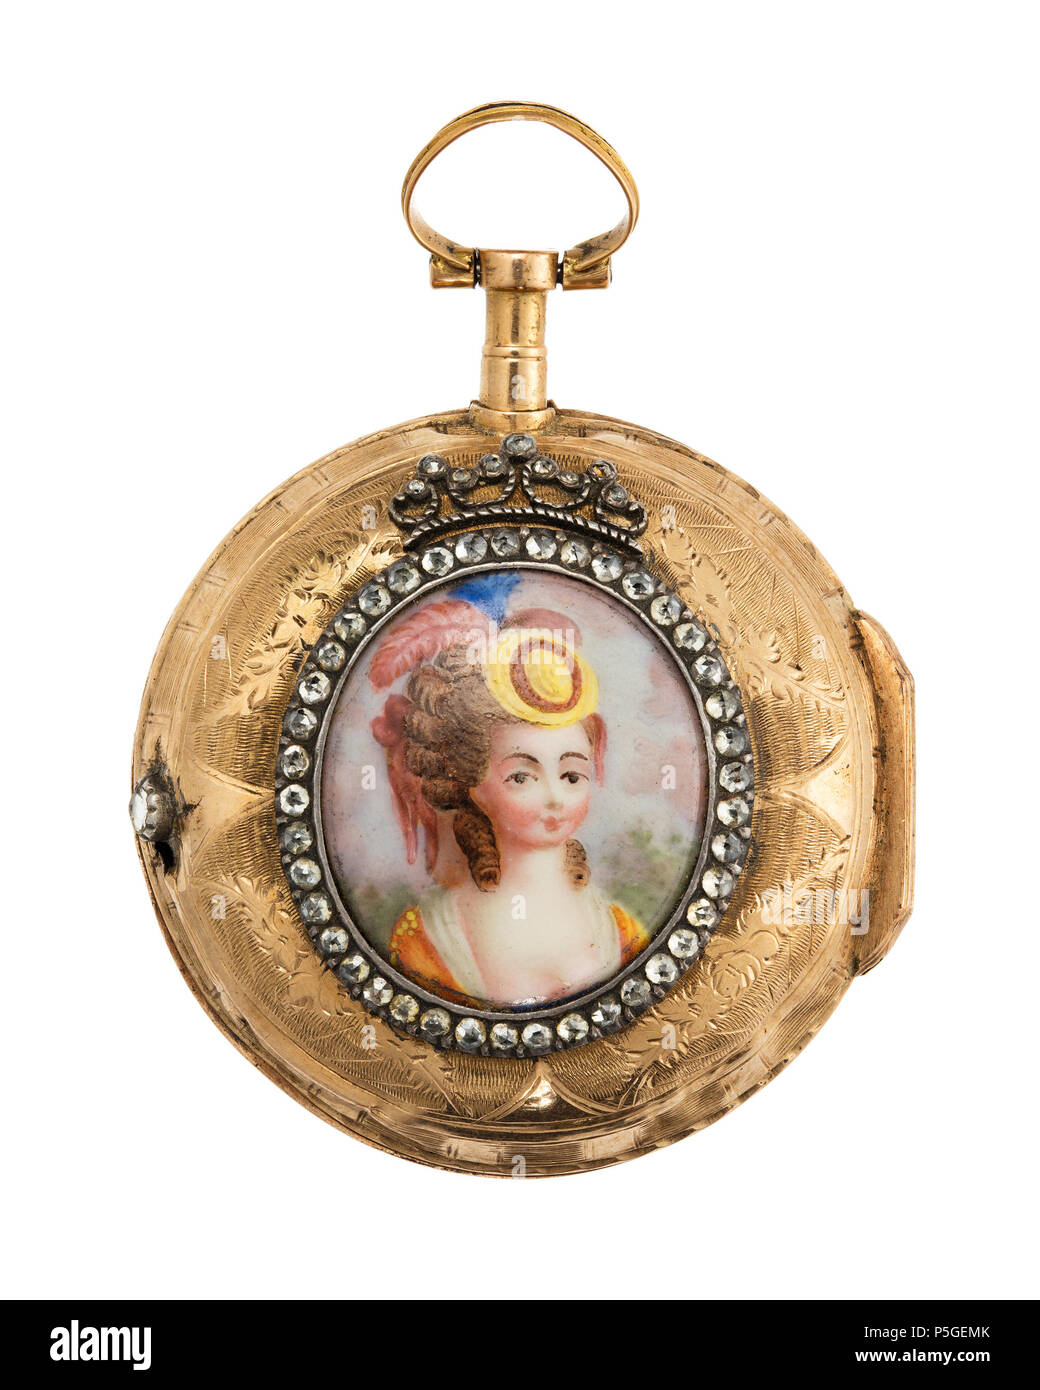 XXXVIII:K.F.a.05. 556 Fickur med boett av guld med miniatyrporträtt i emalj, 1700-tal - Hallwylska museet - 110409 Stock Photo